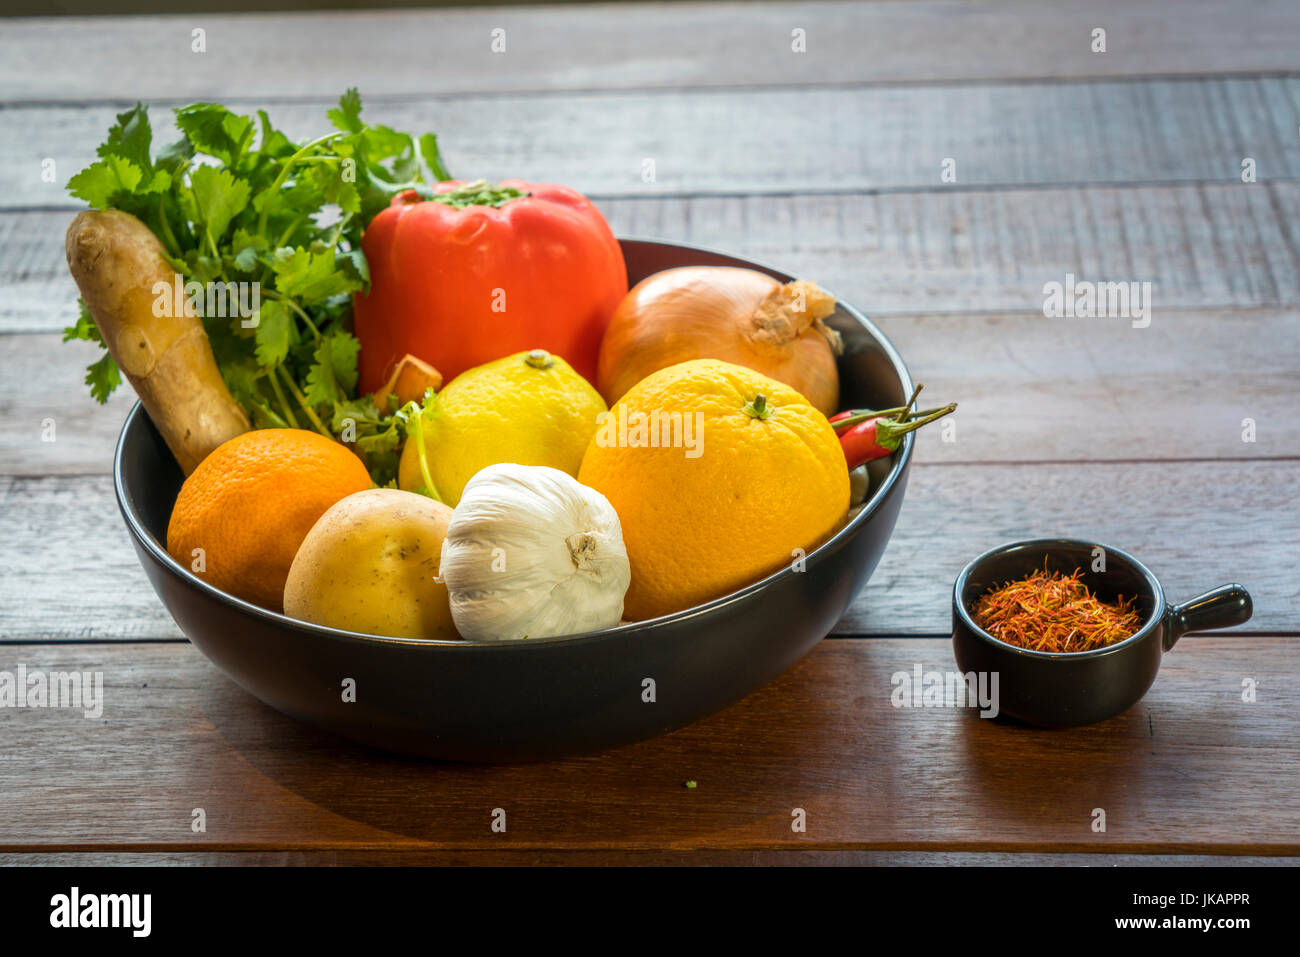 Verdure fresche in un vassoio, le zucchine, la cipolla, arancio, limone, pomodoro, patata Foto Stock